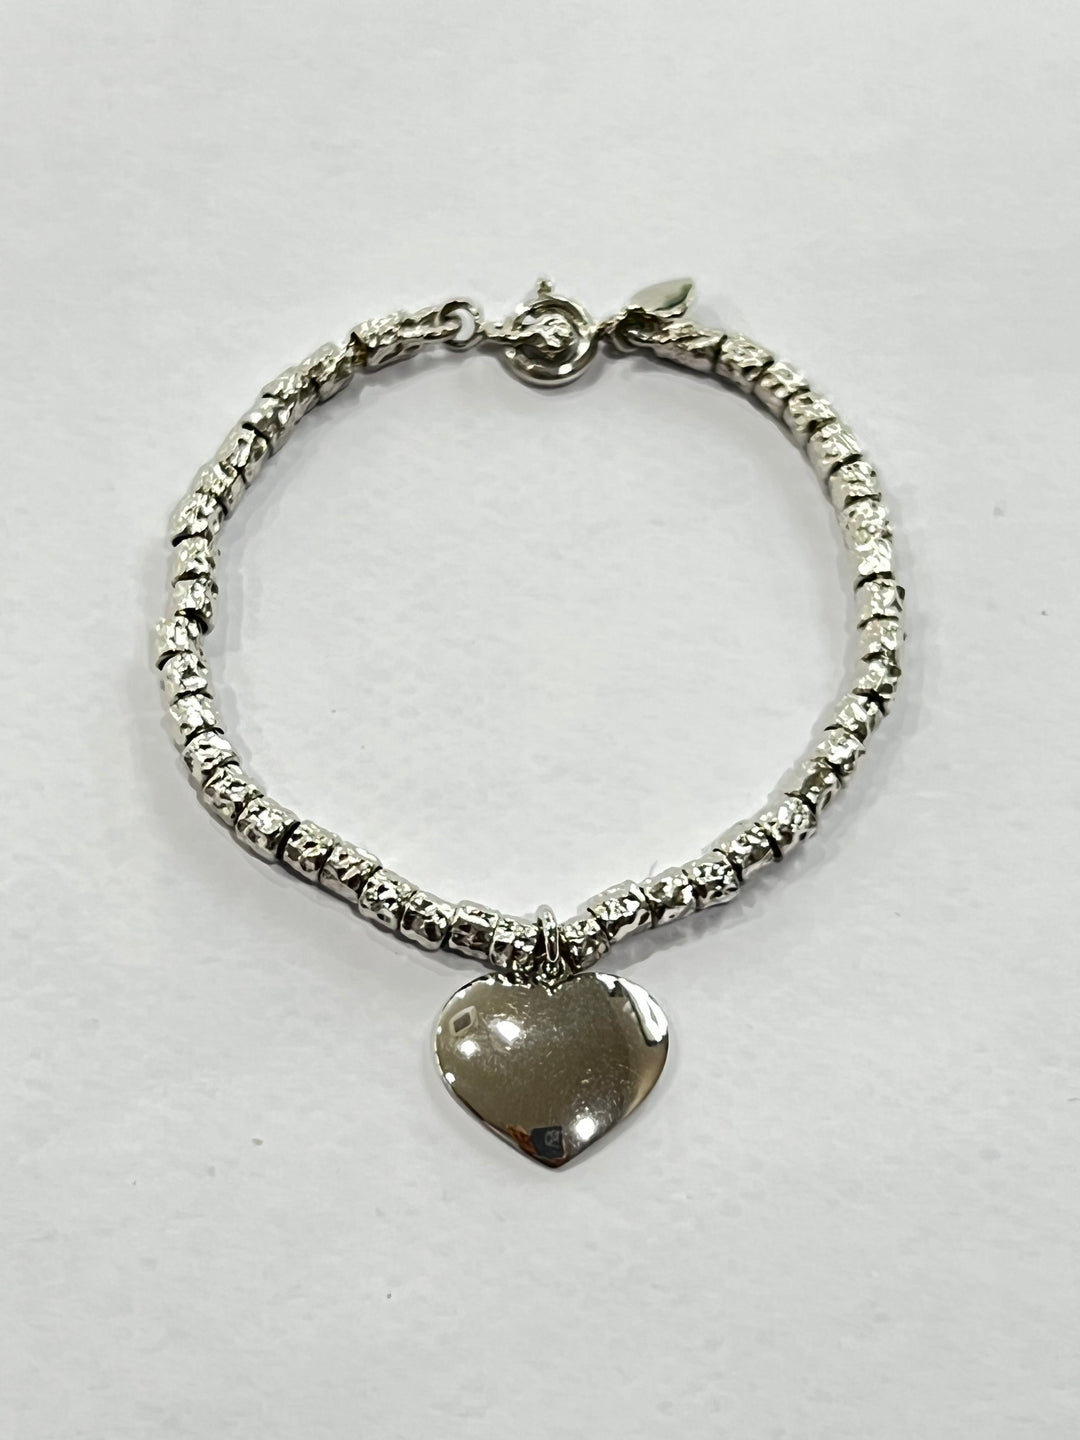 Sidalo Silver Heart Bracelet 925 M4444-Cuor